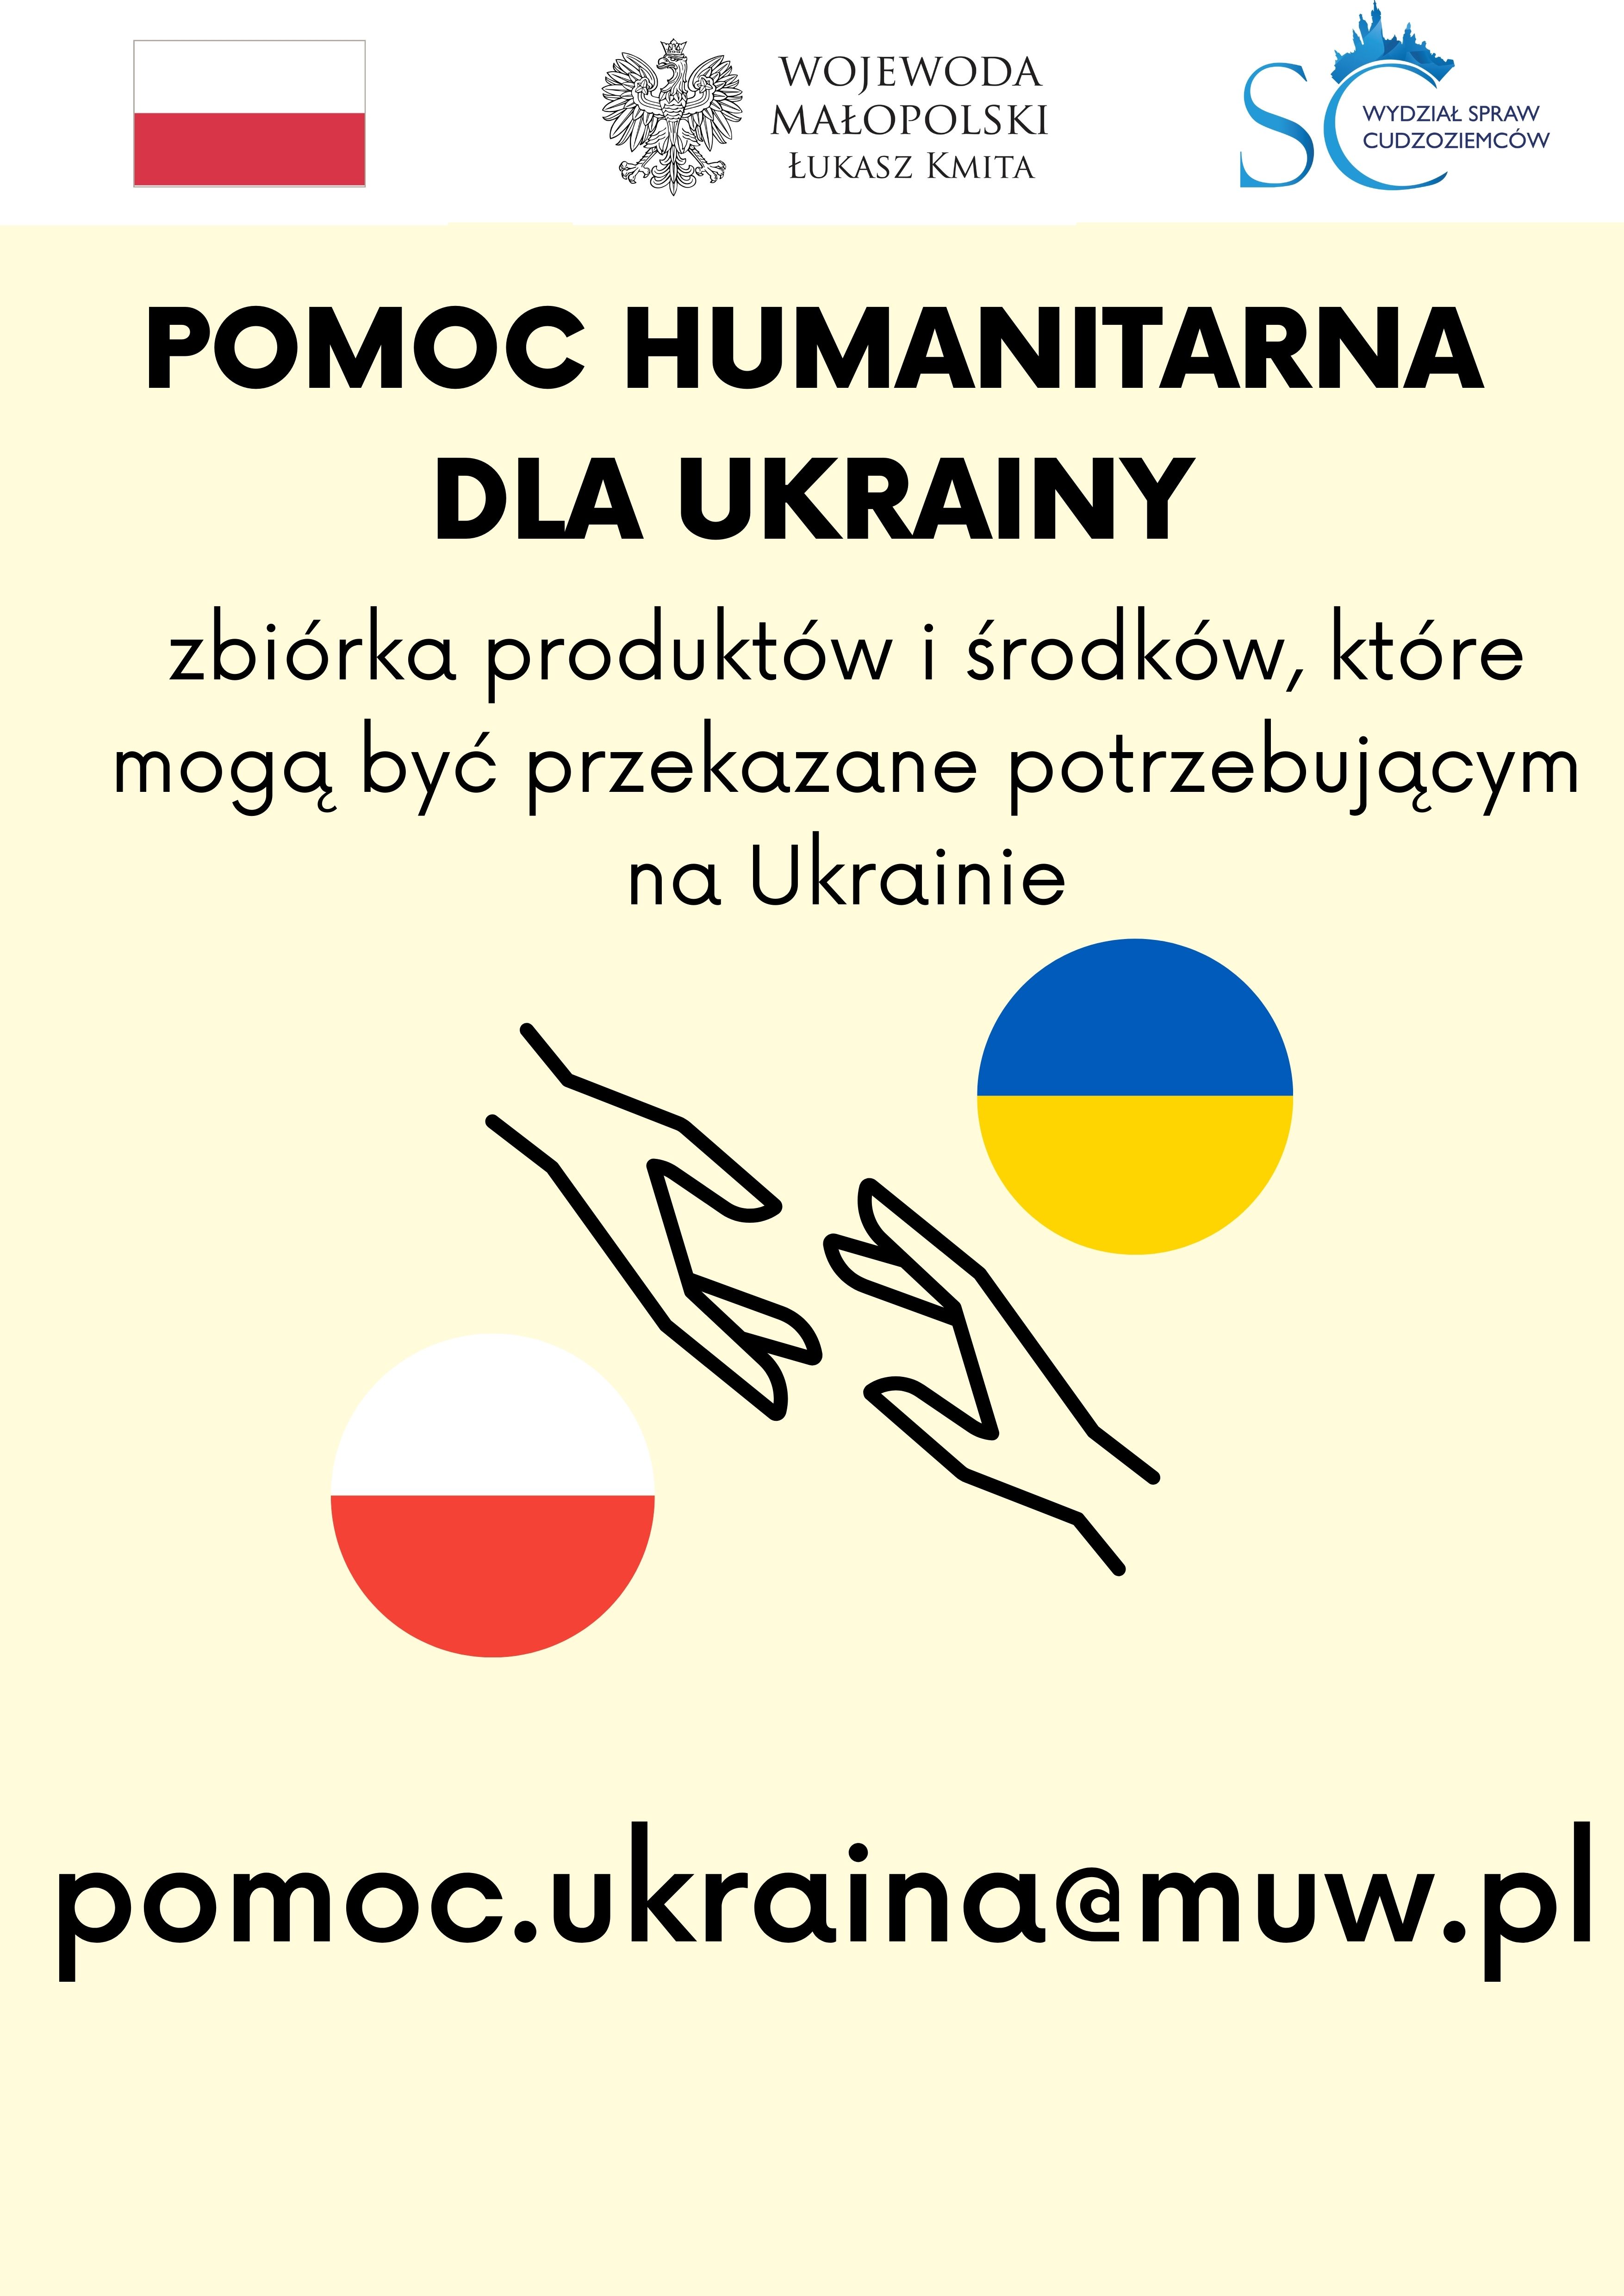 Wojewódzki System Koordynacji Pomocy dla Ukrainy